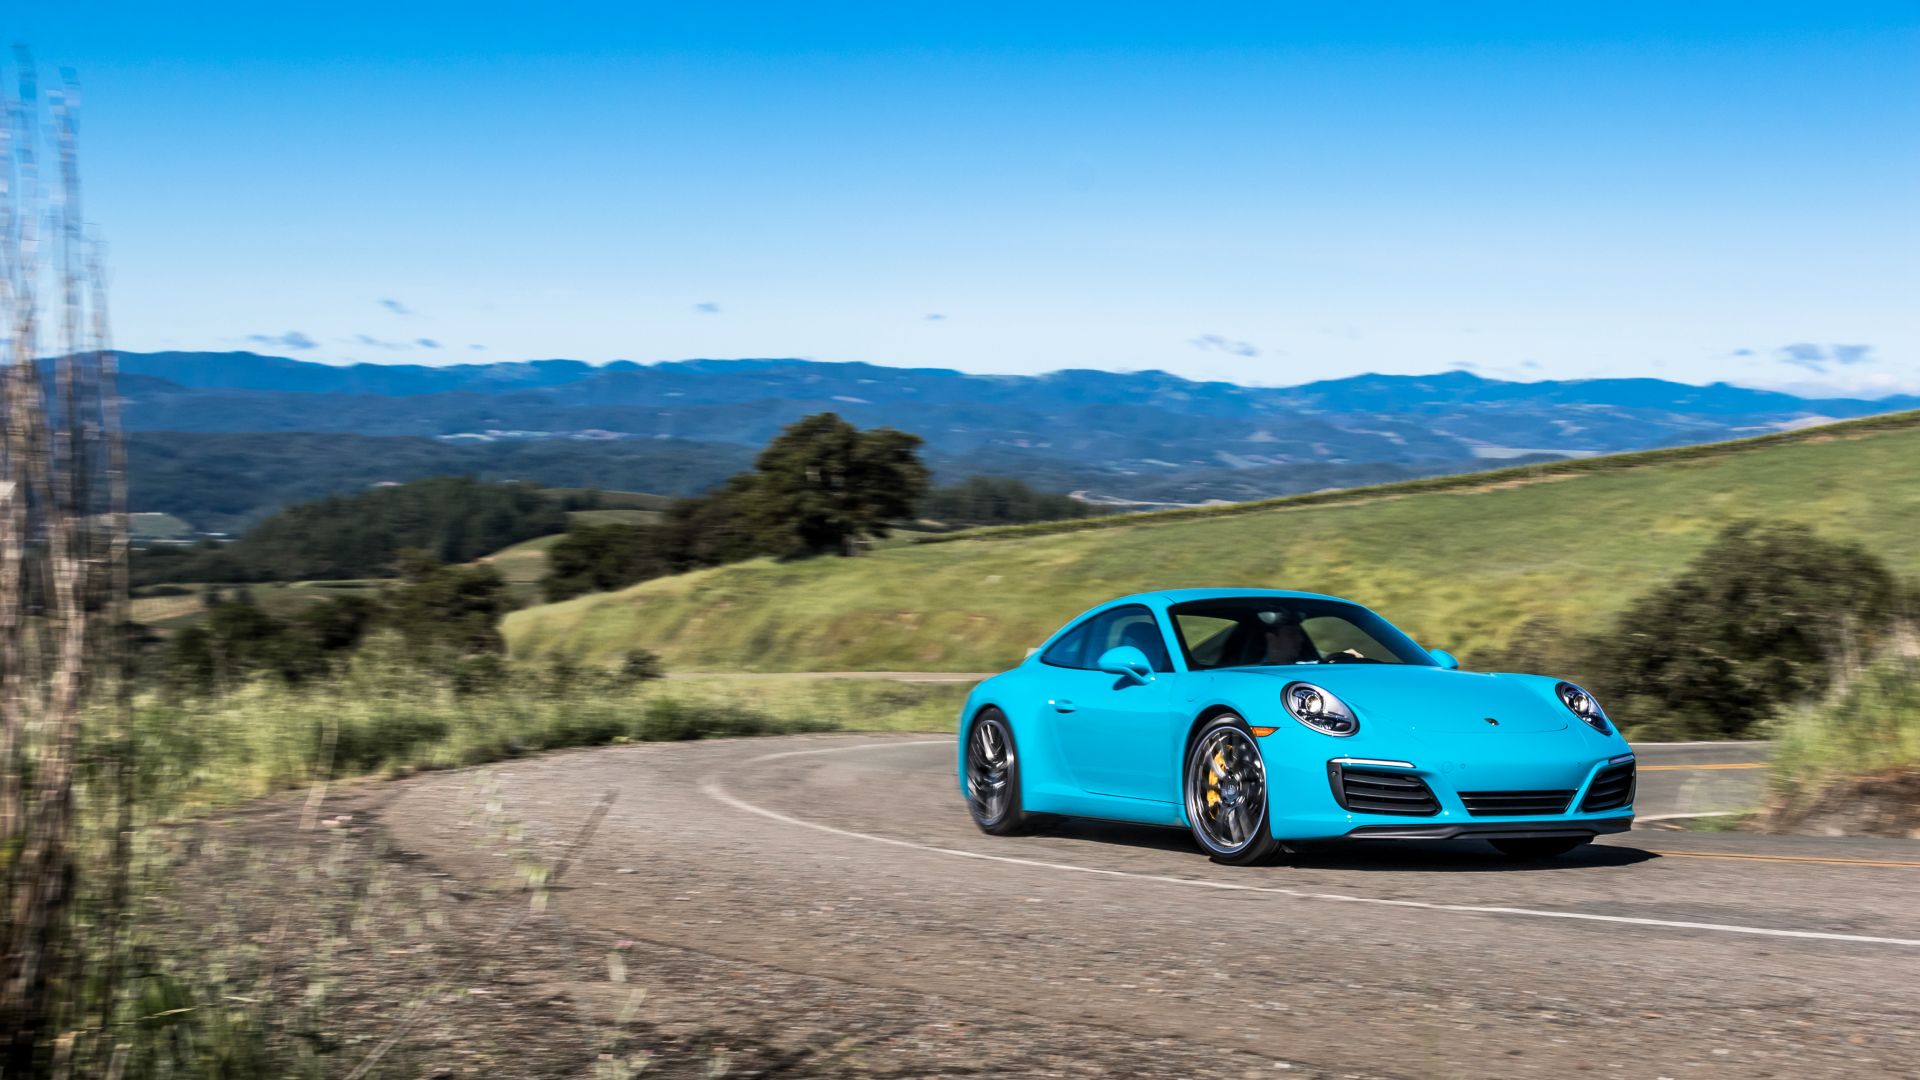 Порш 911 Каррера 4с, купе, голубой, Porsche 911 Carrera 4S Coupe, blue (horizontal)